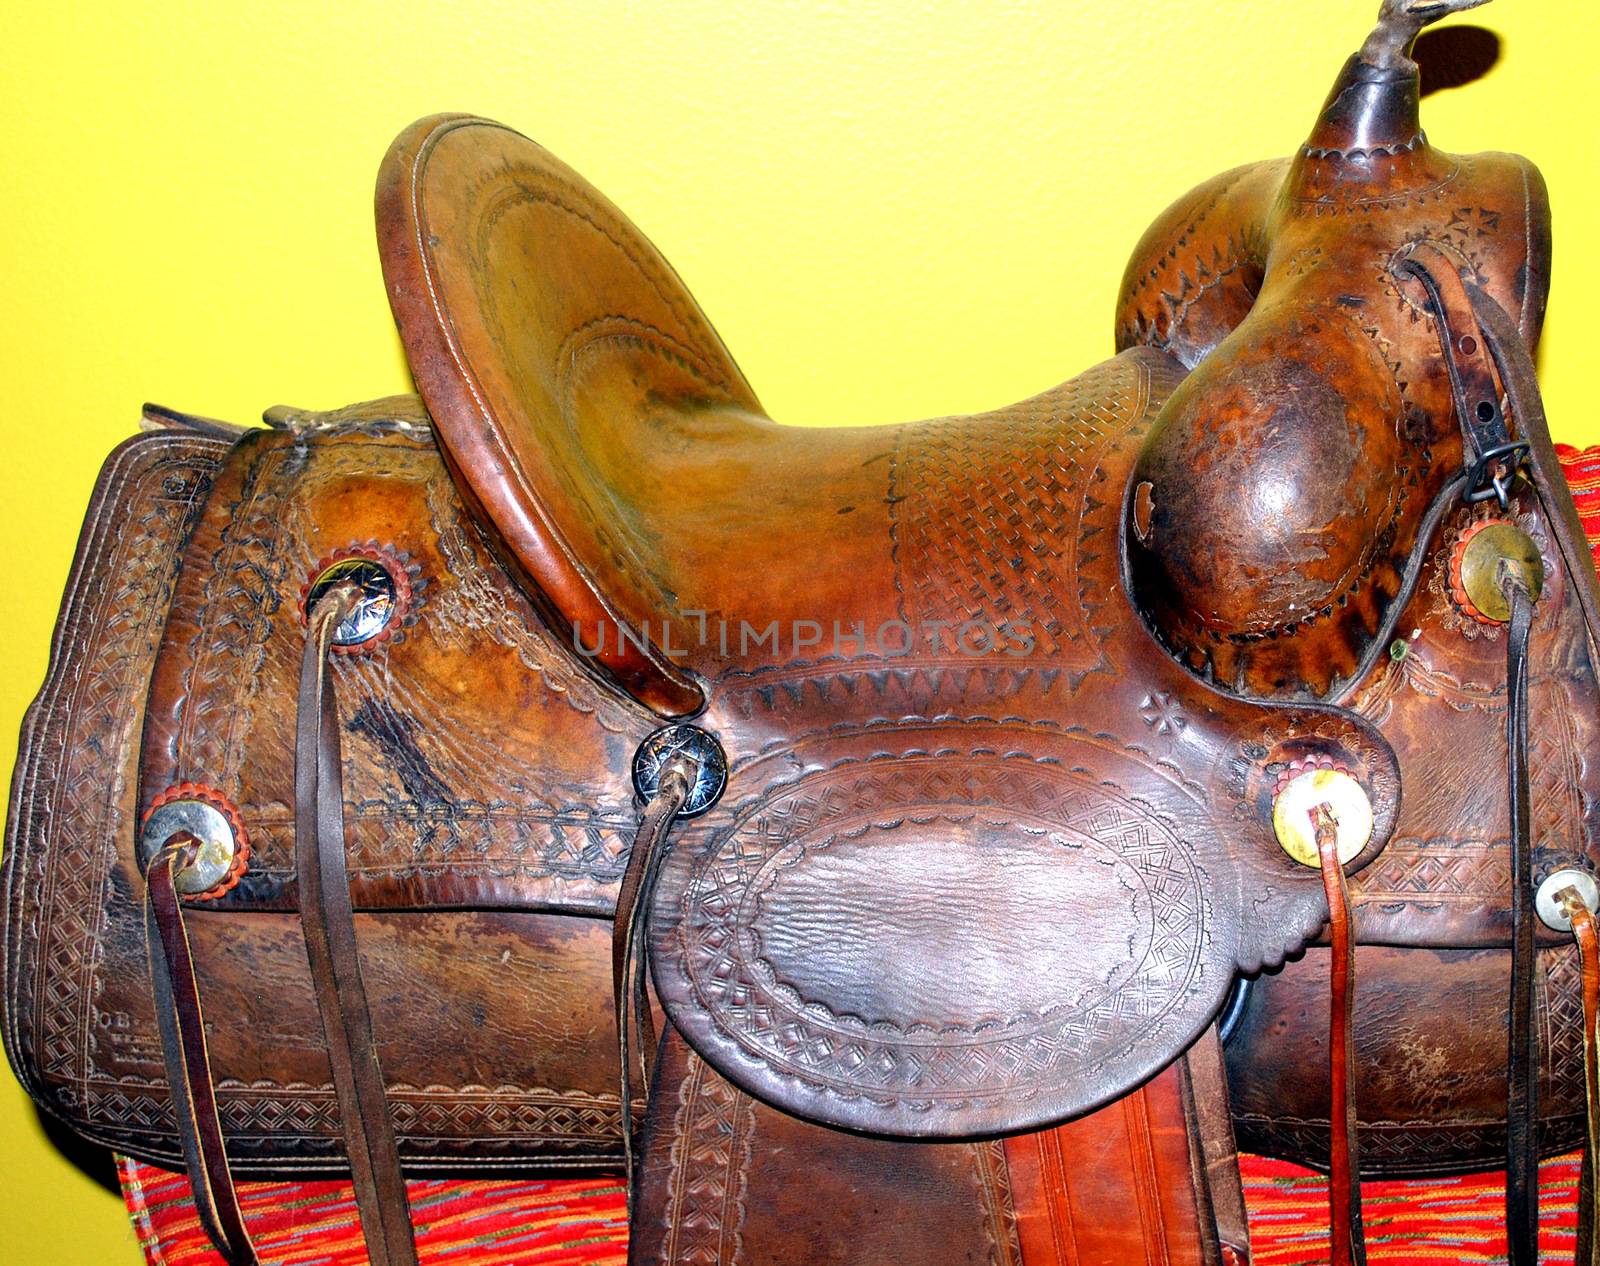 Vintage saddle. by oscarcwilliams